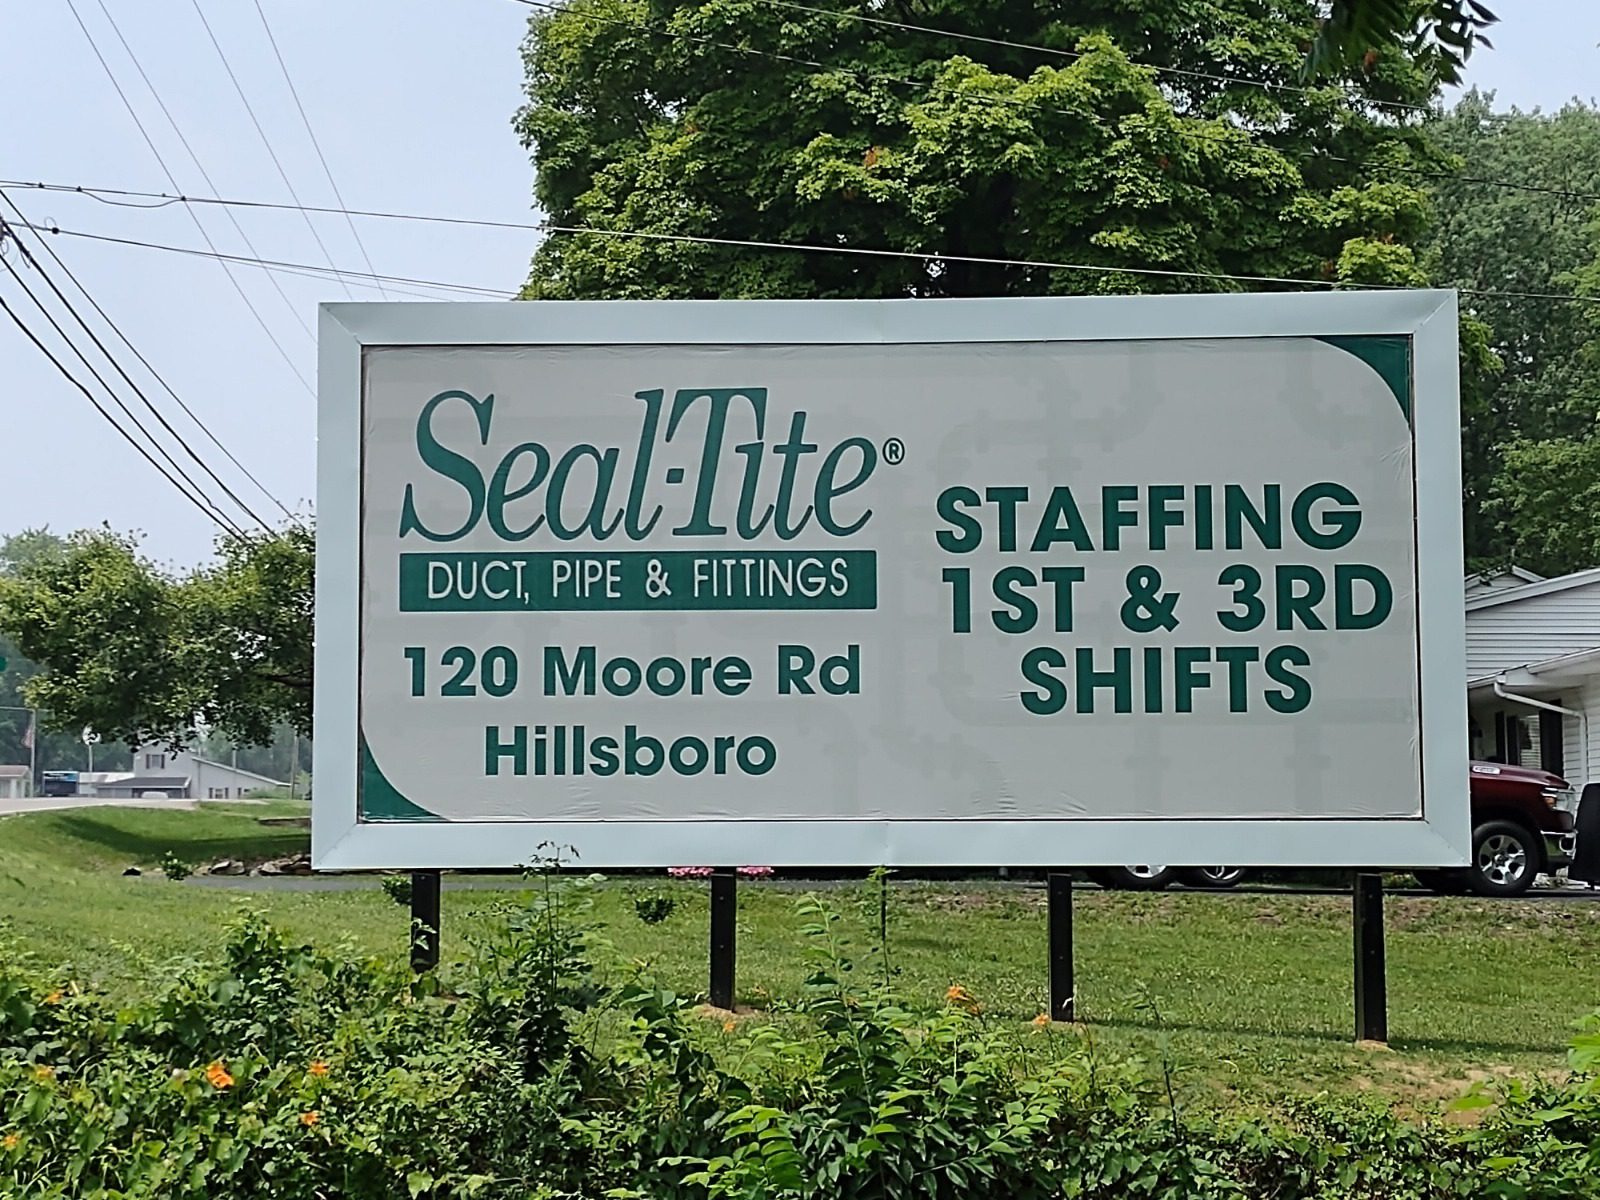 Seal Tite Billboard, hiring billboard, staffing billboard